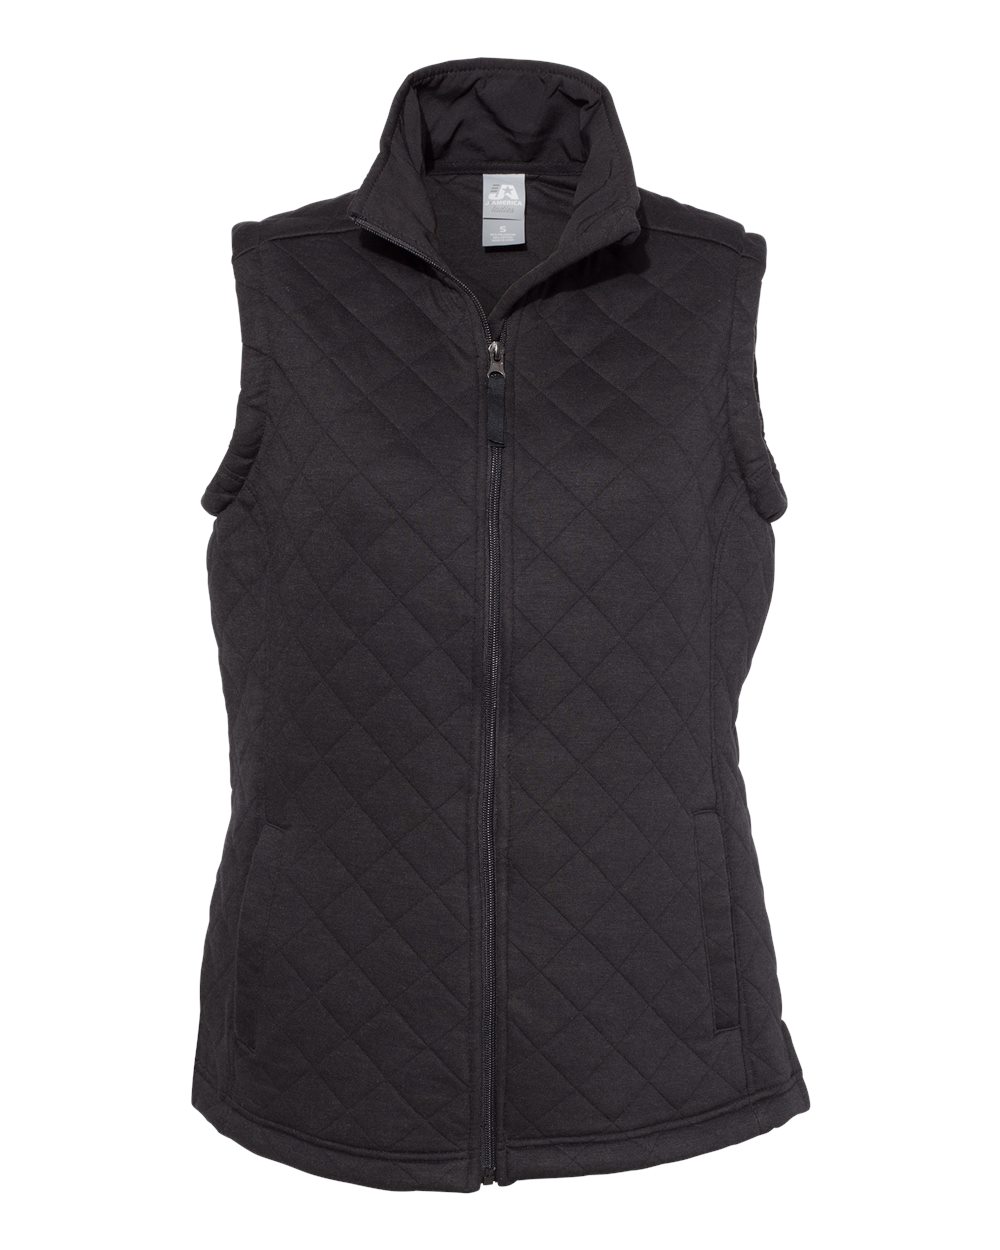 J. America - 8892 - Women's Quilted Full-Zip Vest